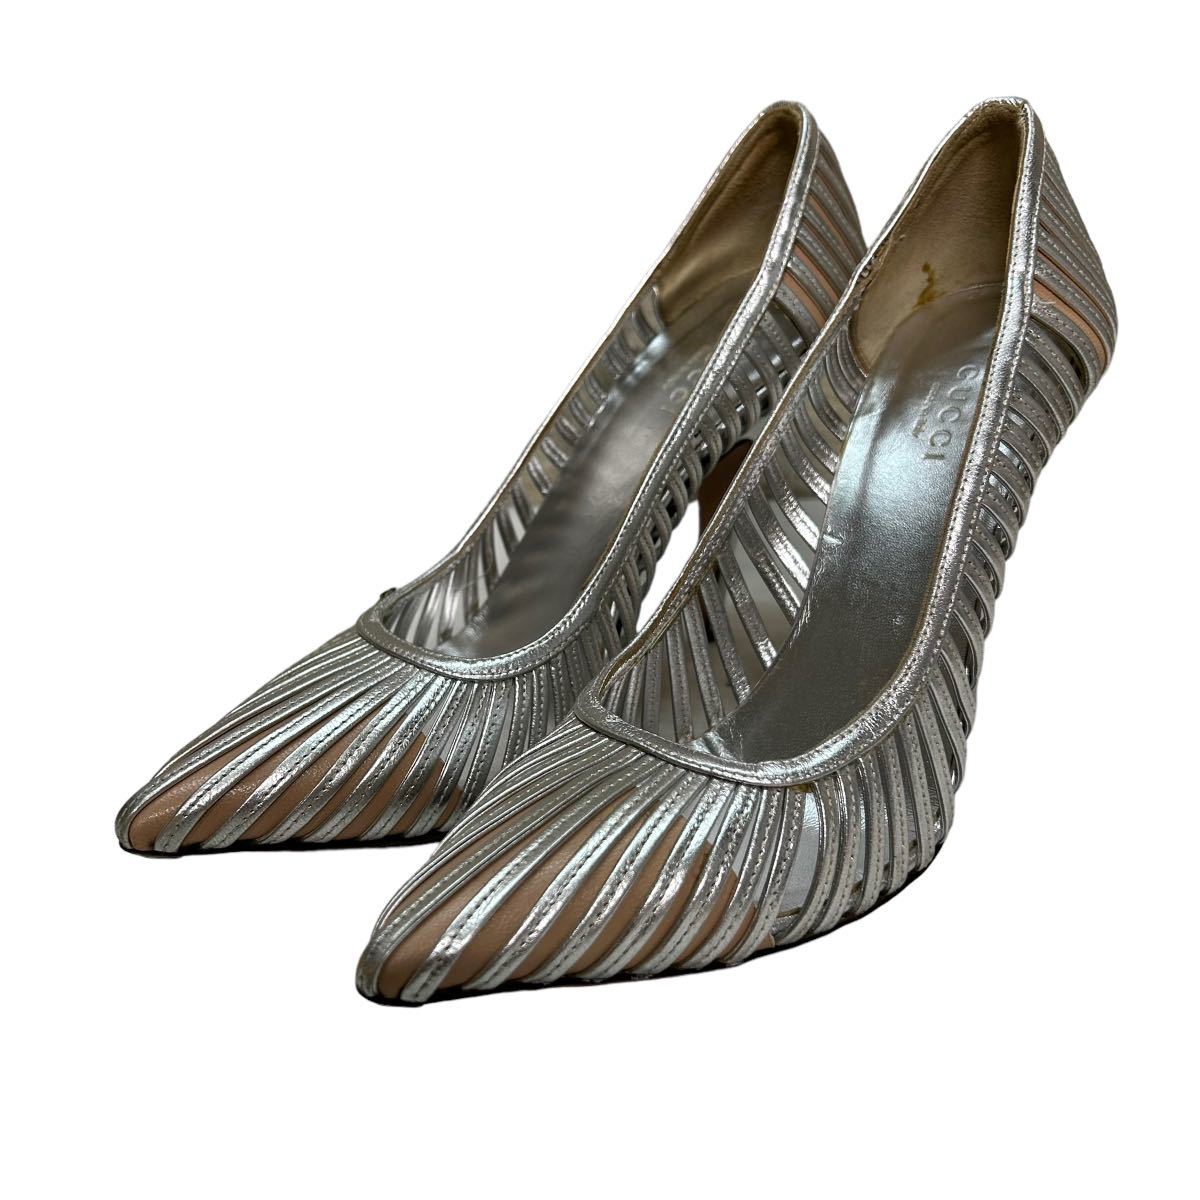 BB837 GUCCI Gucci женский туфли-лодочки 37C примерно 23.5cm серебряный кожа Италия производства 